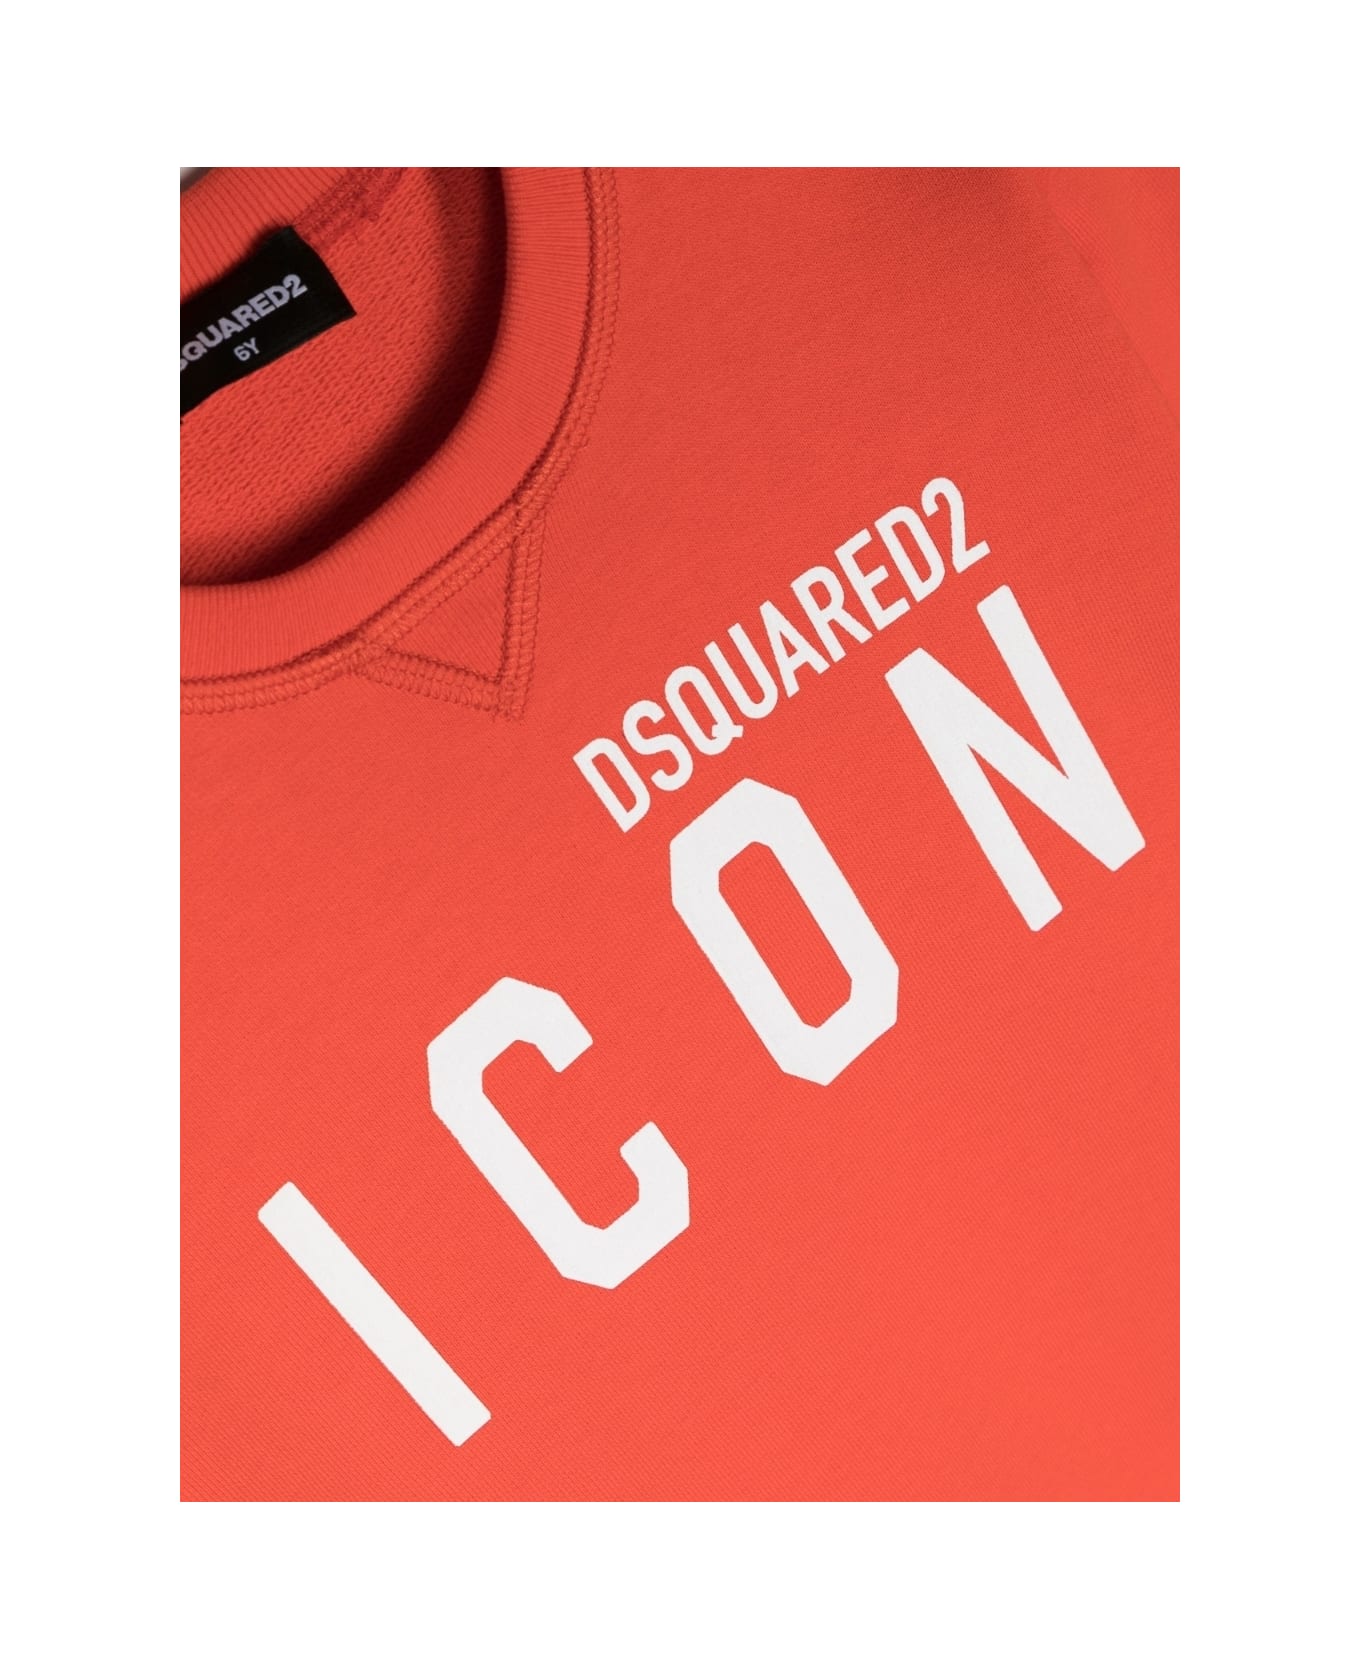 Dsquared2 Icon Sweatshirt With Print - Red ニットウェア＆スウェットシャツ